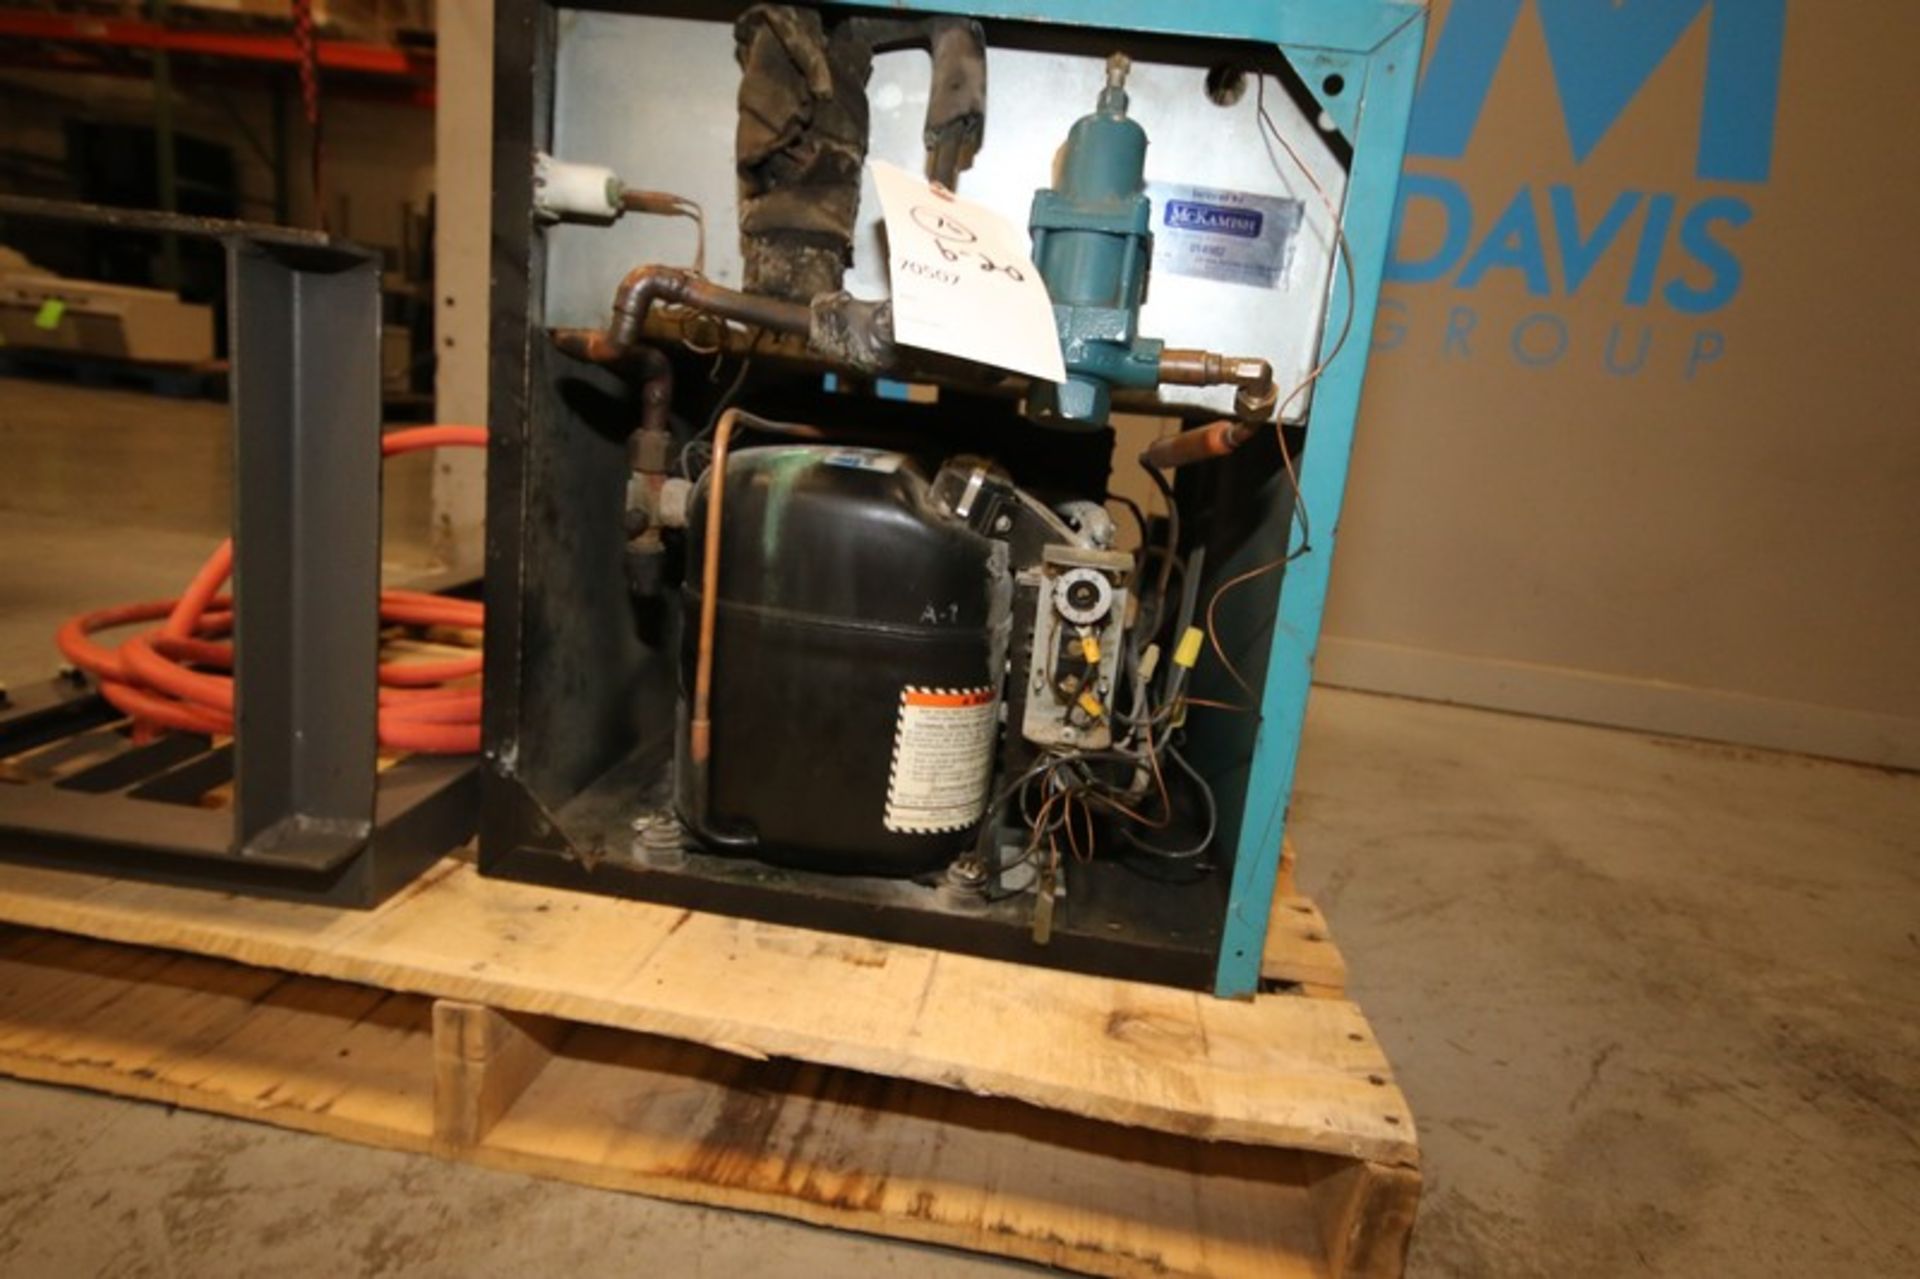 Hankinson Compressed Air Dryer, M/N 80125, S/N 0330A-2-8811-183N, R-22 Refrigerant, 230 Volts, 1 - Bild 3 aus 6